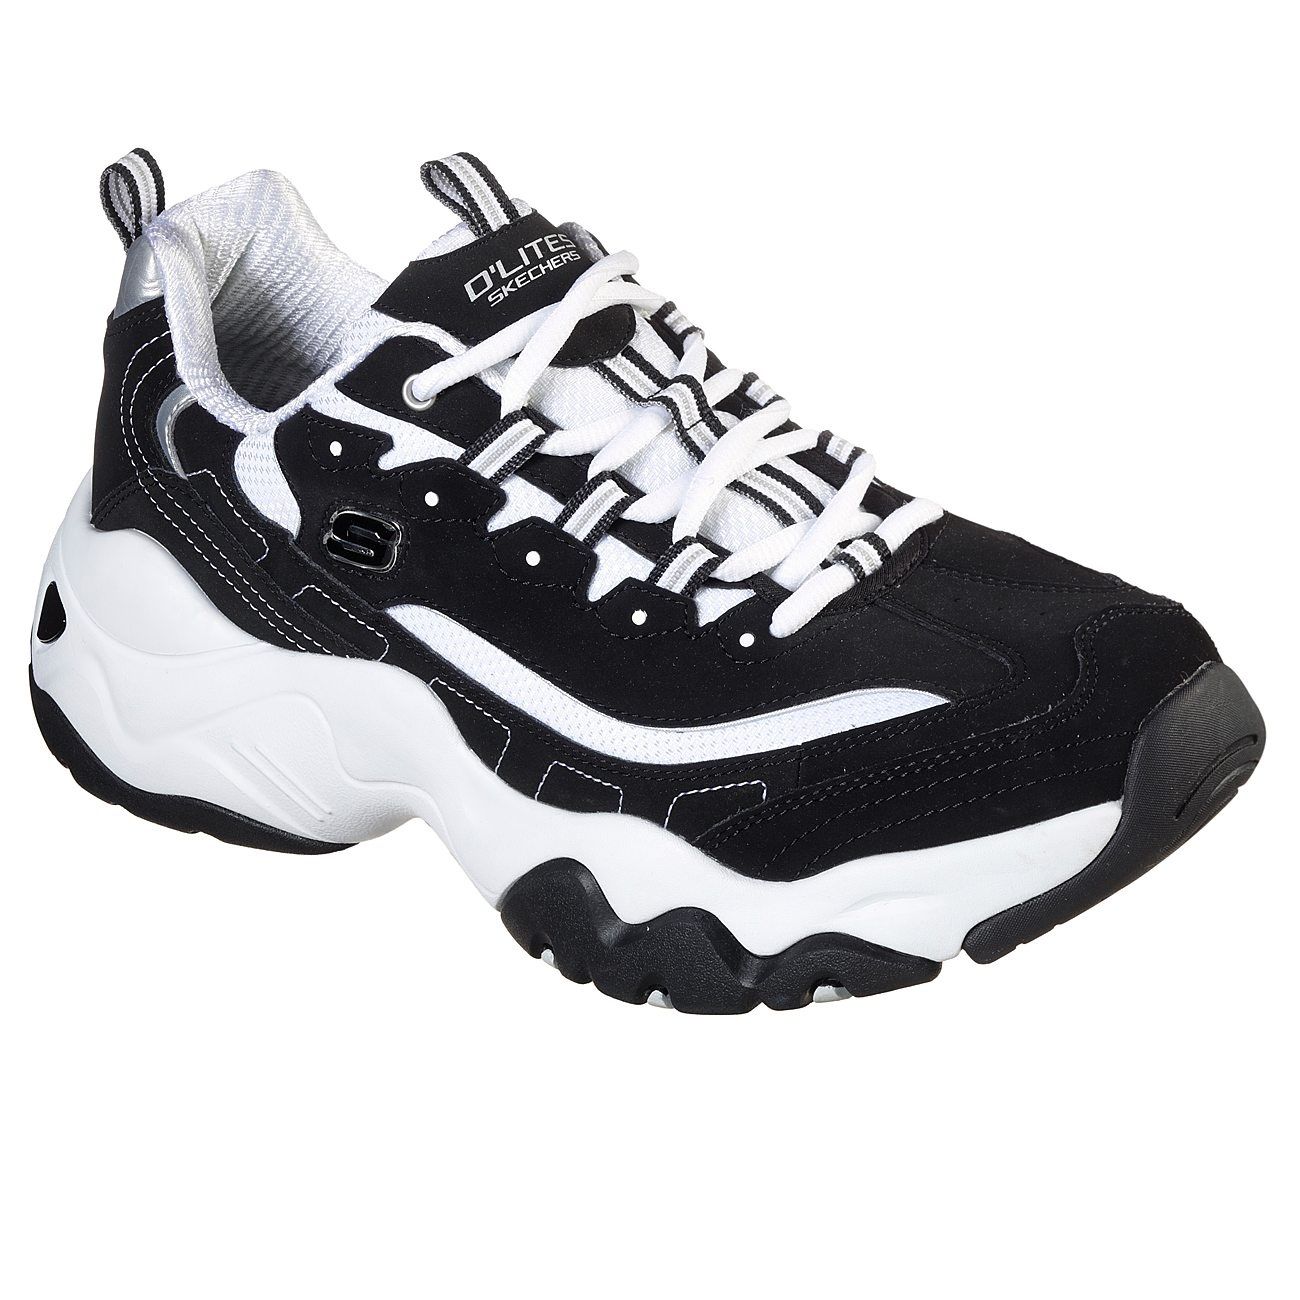 کفش مخصوص پیاده روی مردانه اسکچرز مدل RS 52686 blk -  - 2